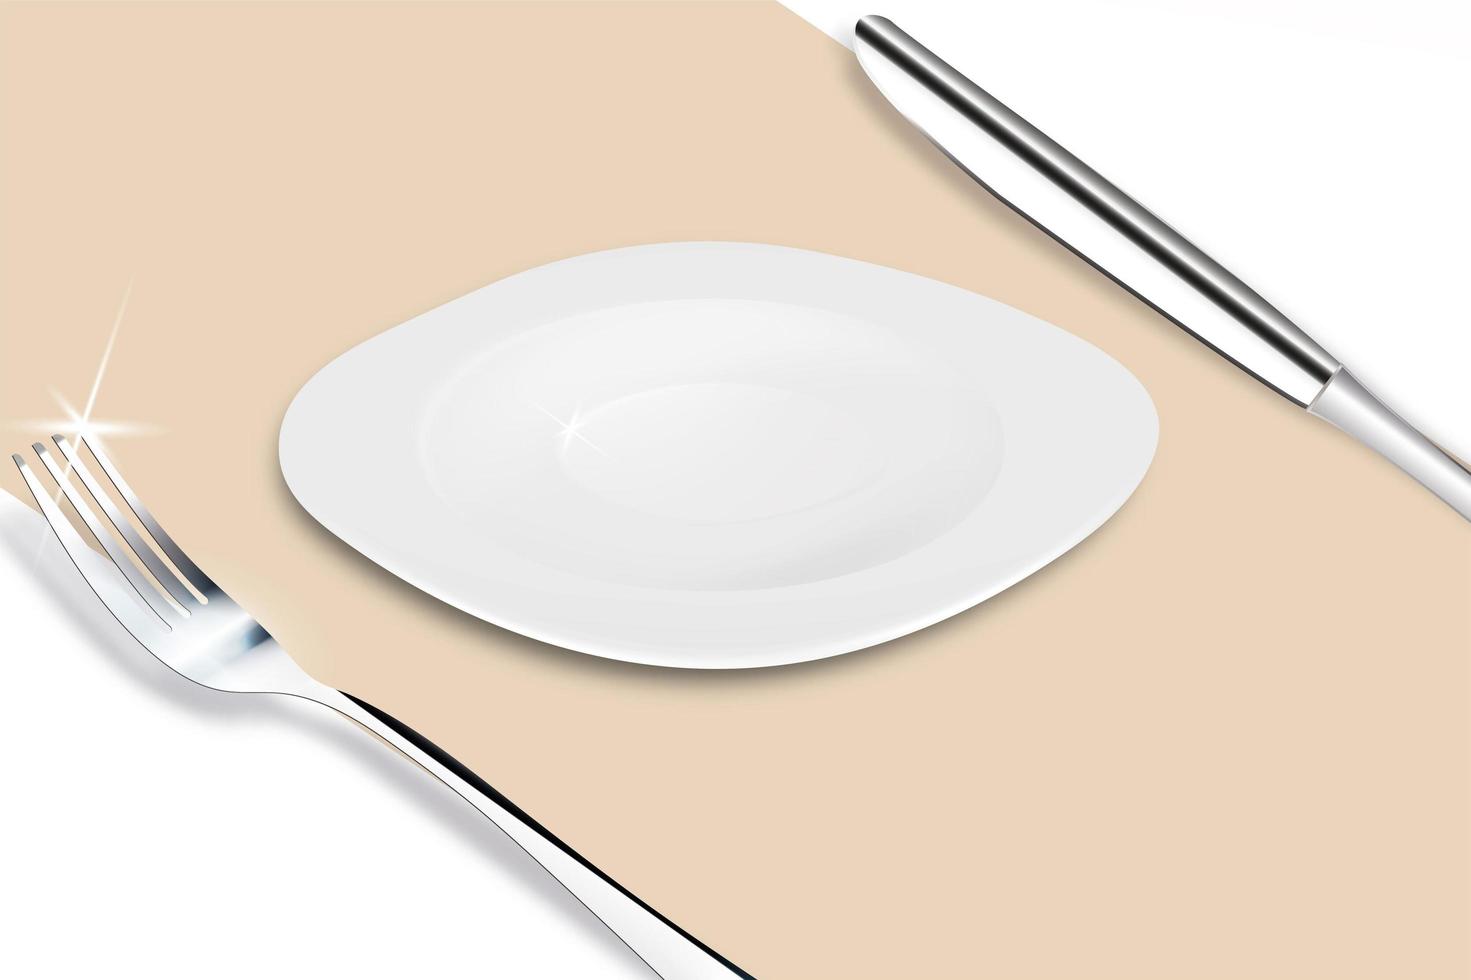 piatto servito con forchetta e coltello su una tela beige con un'ombra. Illustrazione vettoriale 3d del design del ristorante, caffetteria.